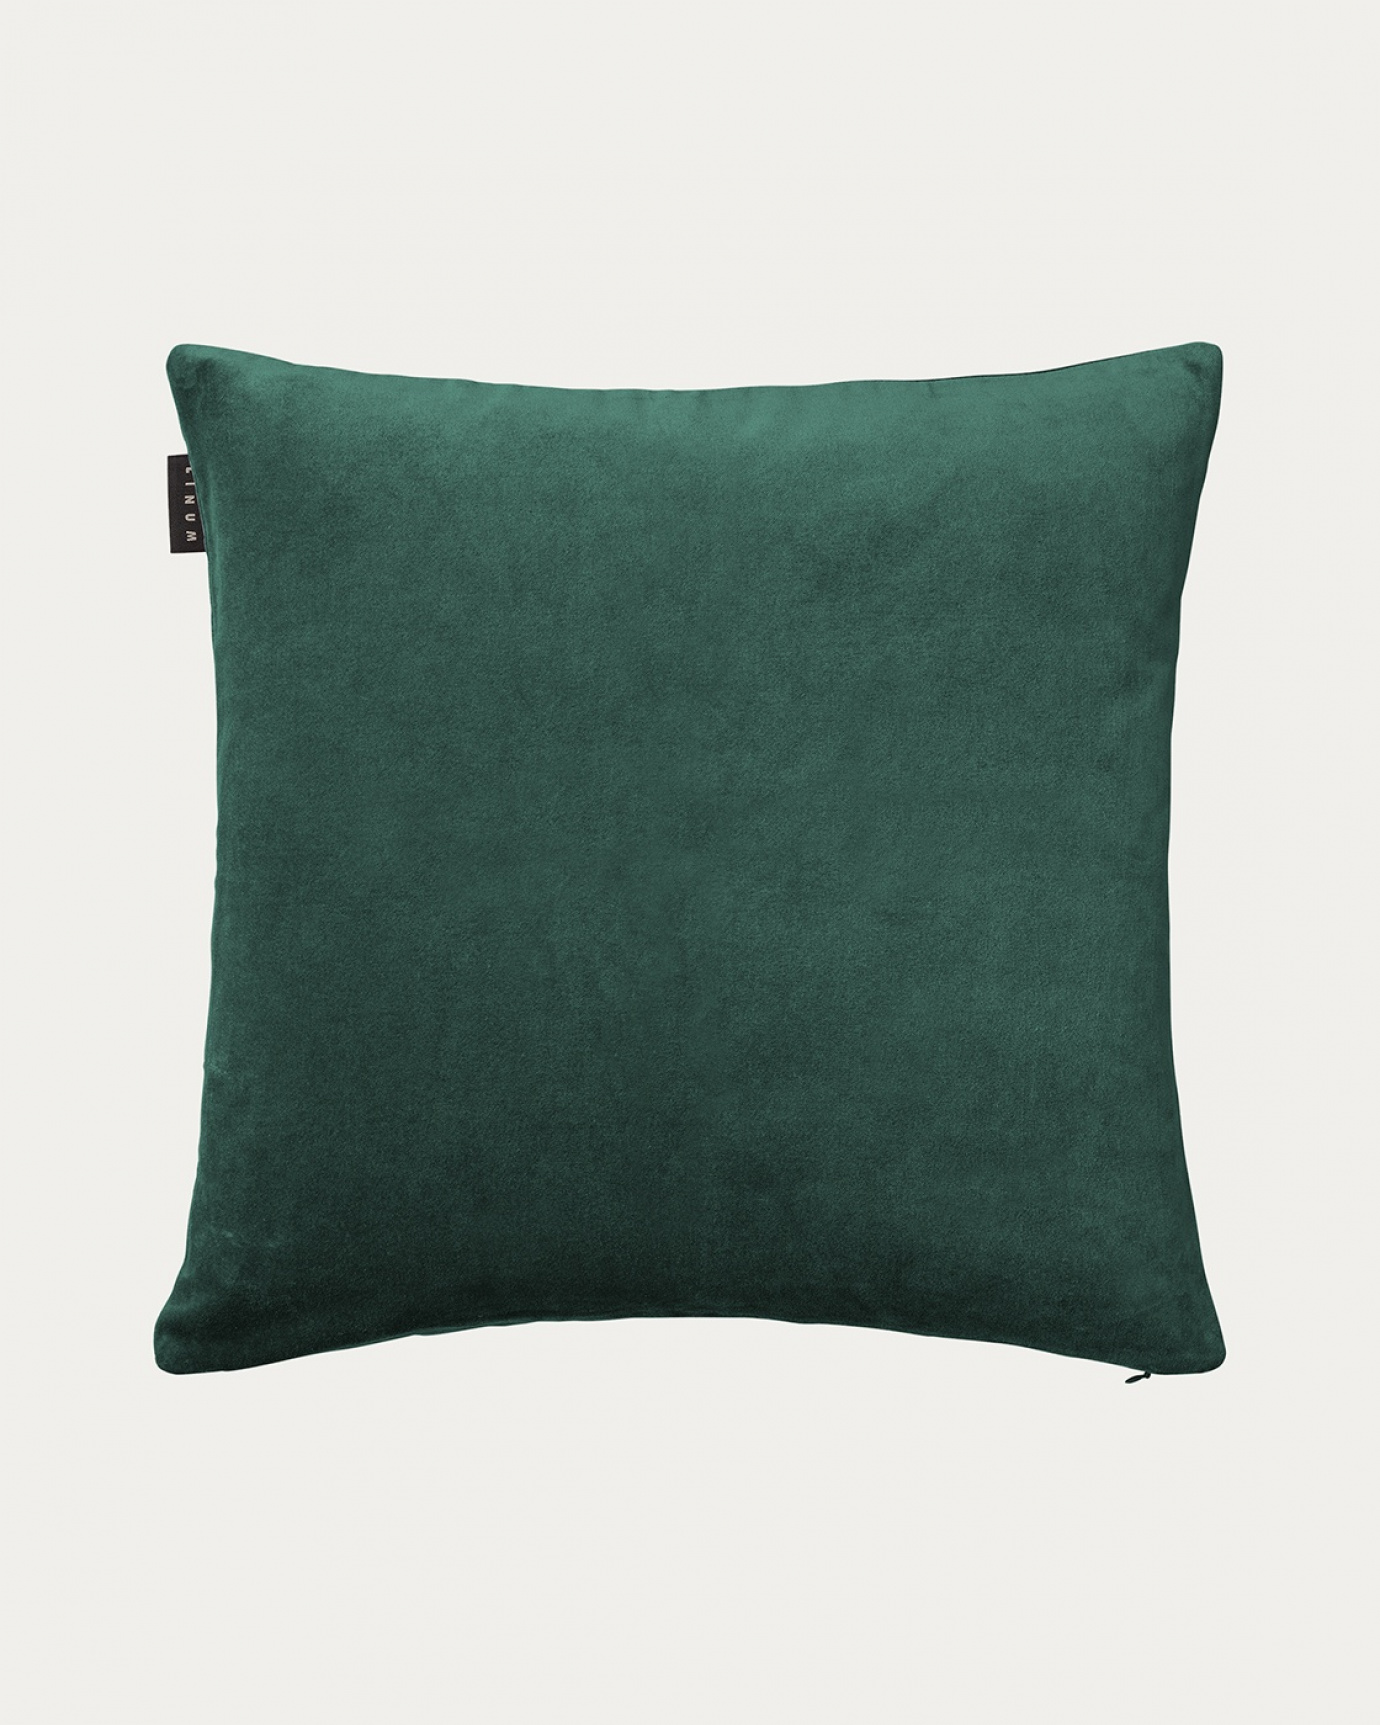 Produktbild djup smaragdgrön PAOLO kuddfodral av mjuk bomullssammet från LINUM DESIGN. Storlek 50x50 cm.